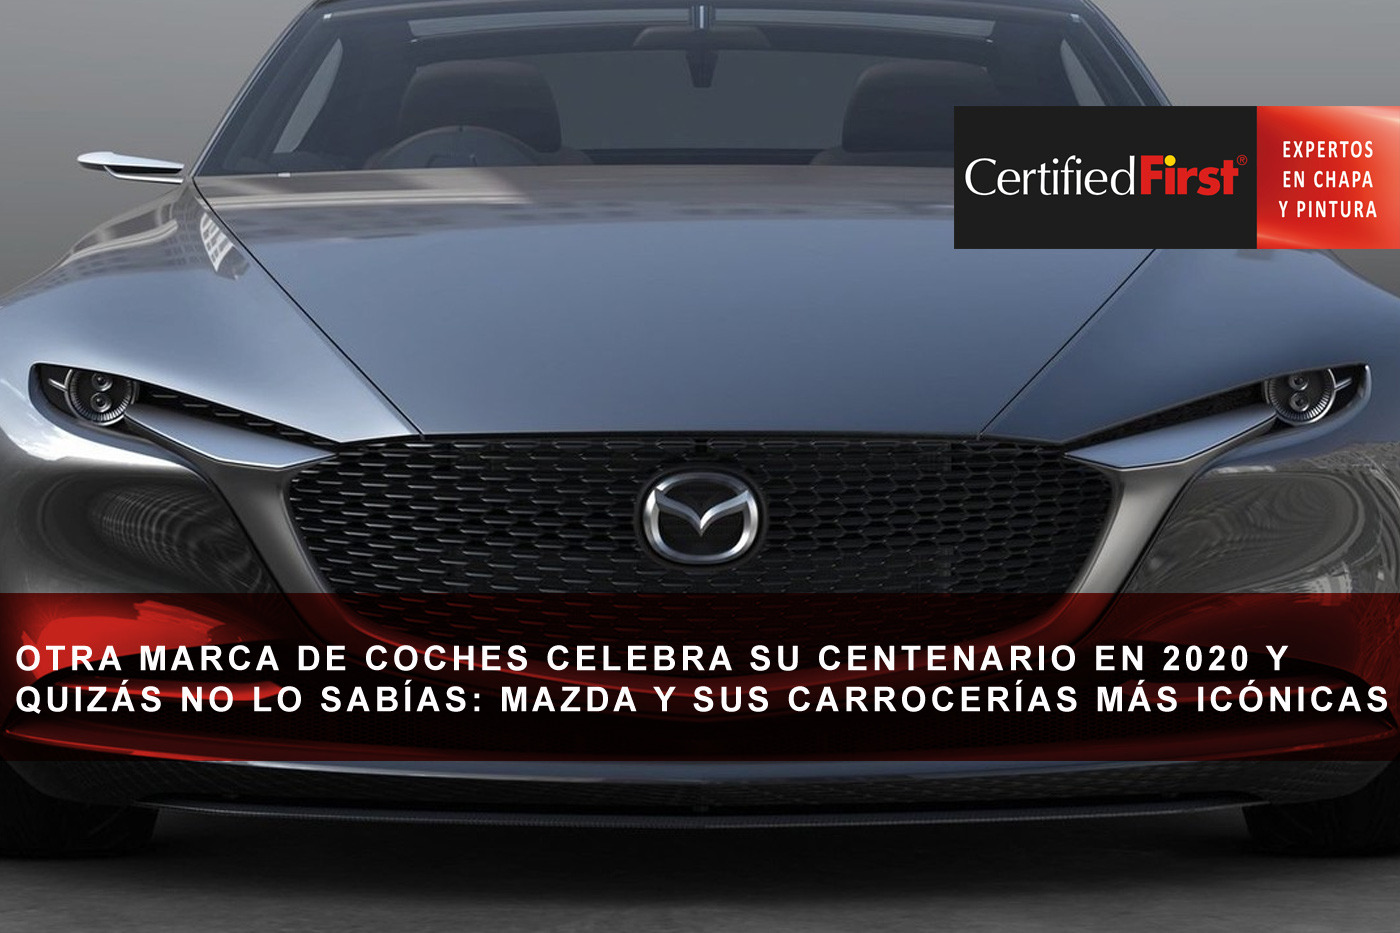 Otra marca de coches celebra su centenario en 2020 y quizás no lo sabías: Mazda y sus carrocerías más icónicas